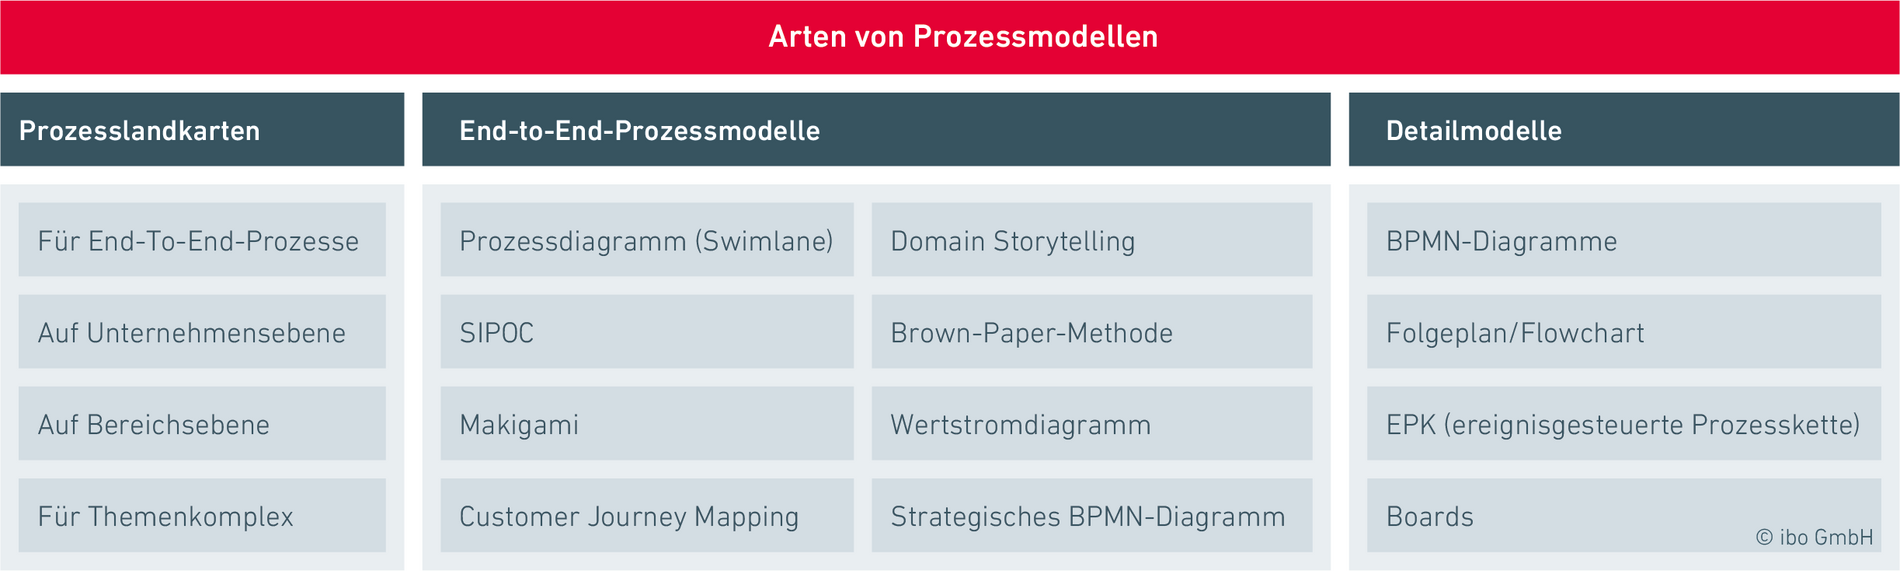 Prozessdiagramm-Überblick: Prozessmodell und Einsatzgebiet